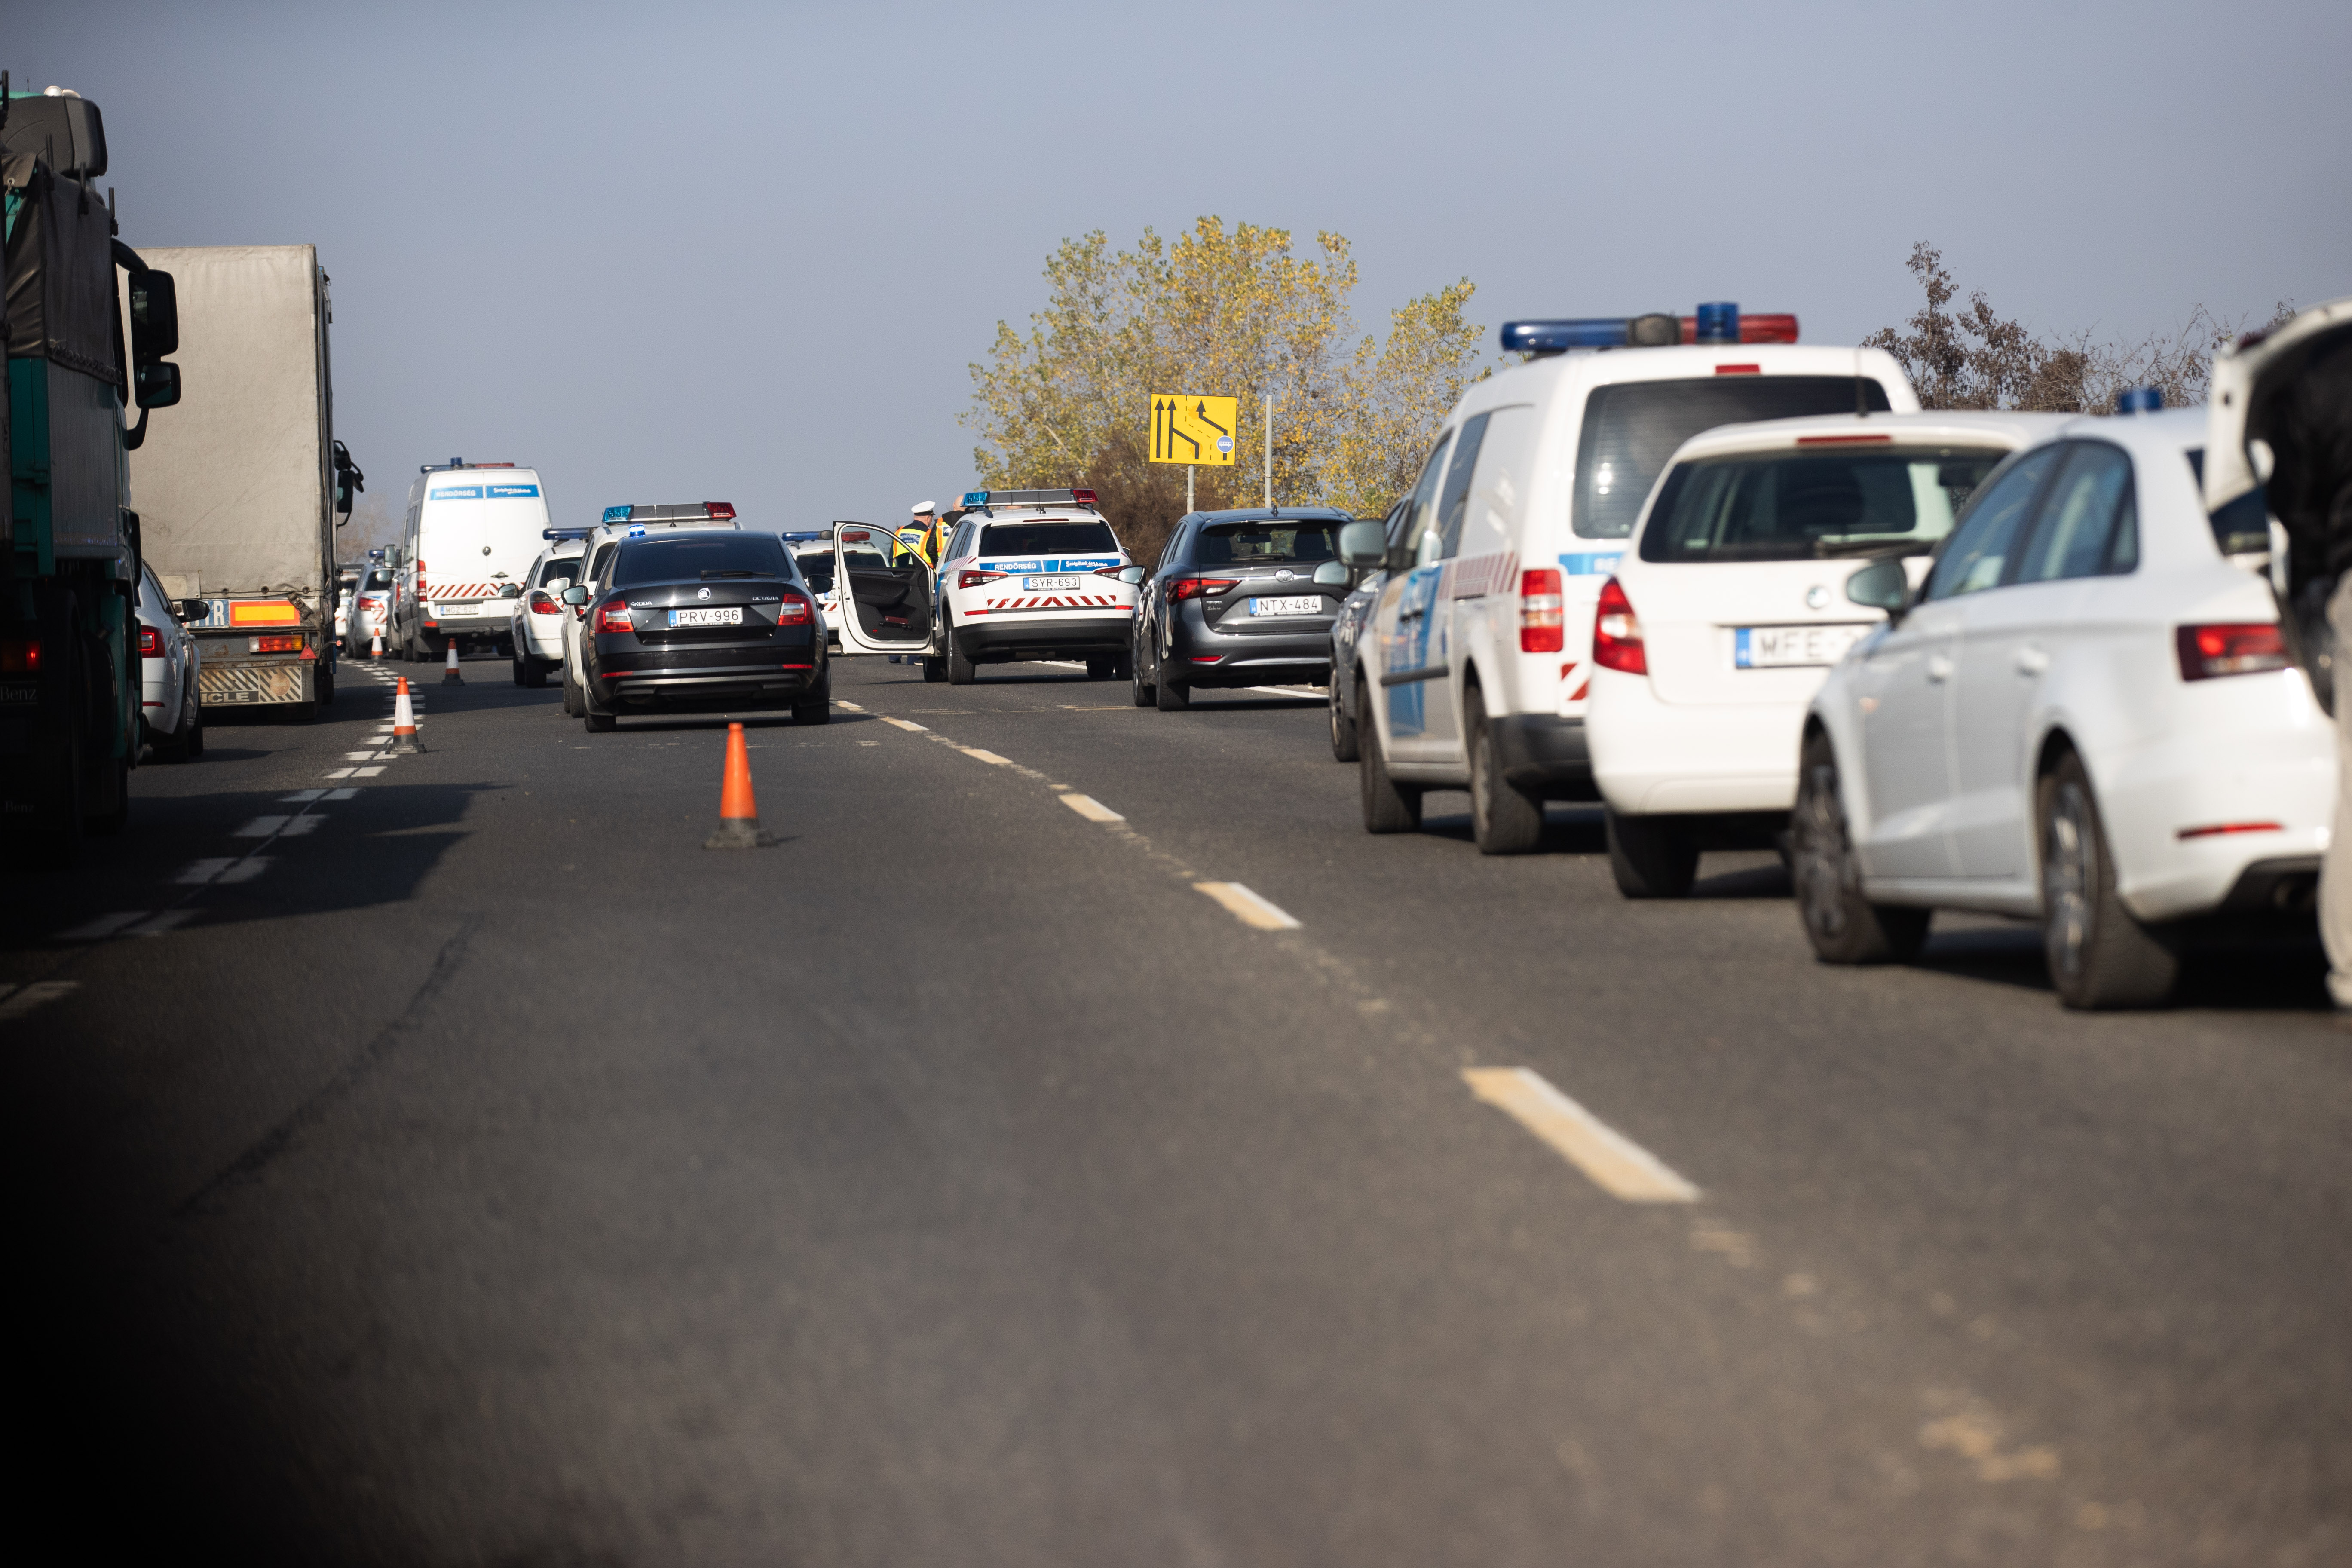 Halálos baleset történt az M5-ösön, teherautónak ütközött a bolgár sofőr -  Blikk